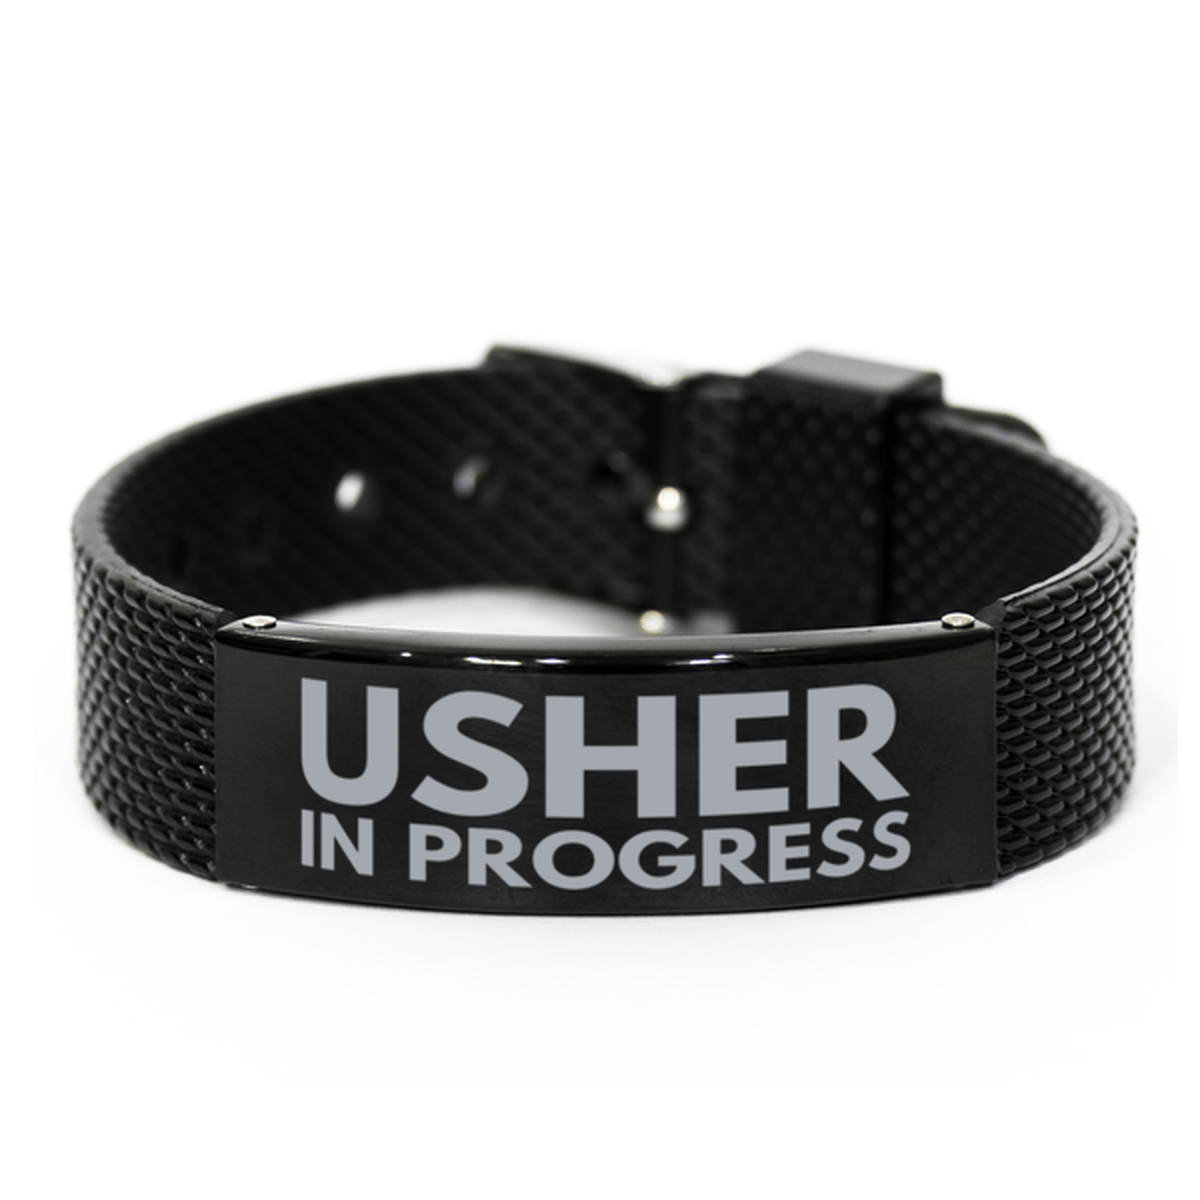 Inspirational Usher Black Shark Mesh Bracelet, Usher In Progress, Best Graduation Gifts for Students